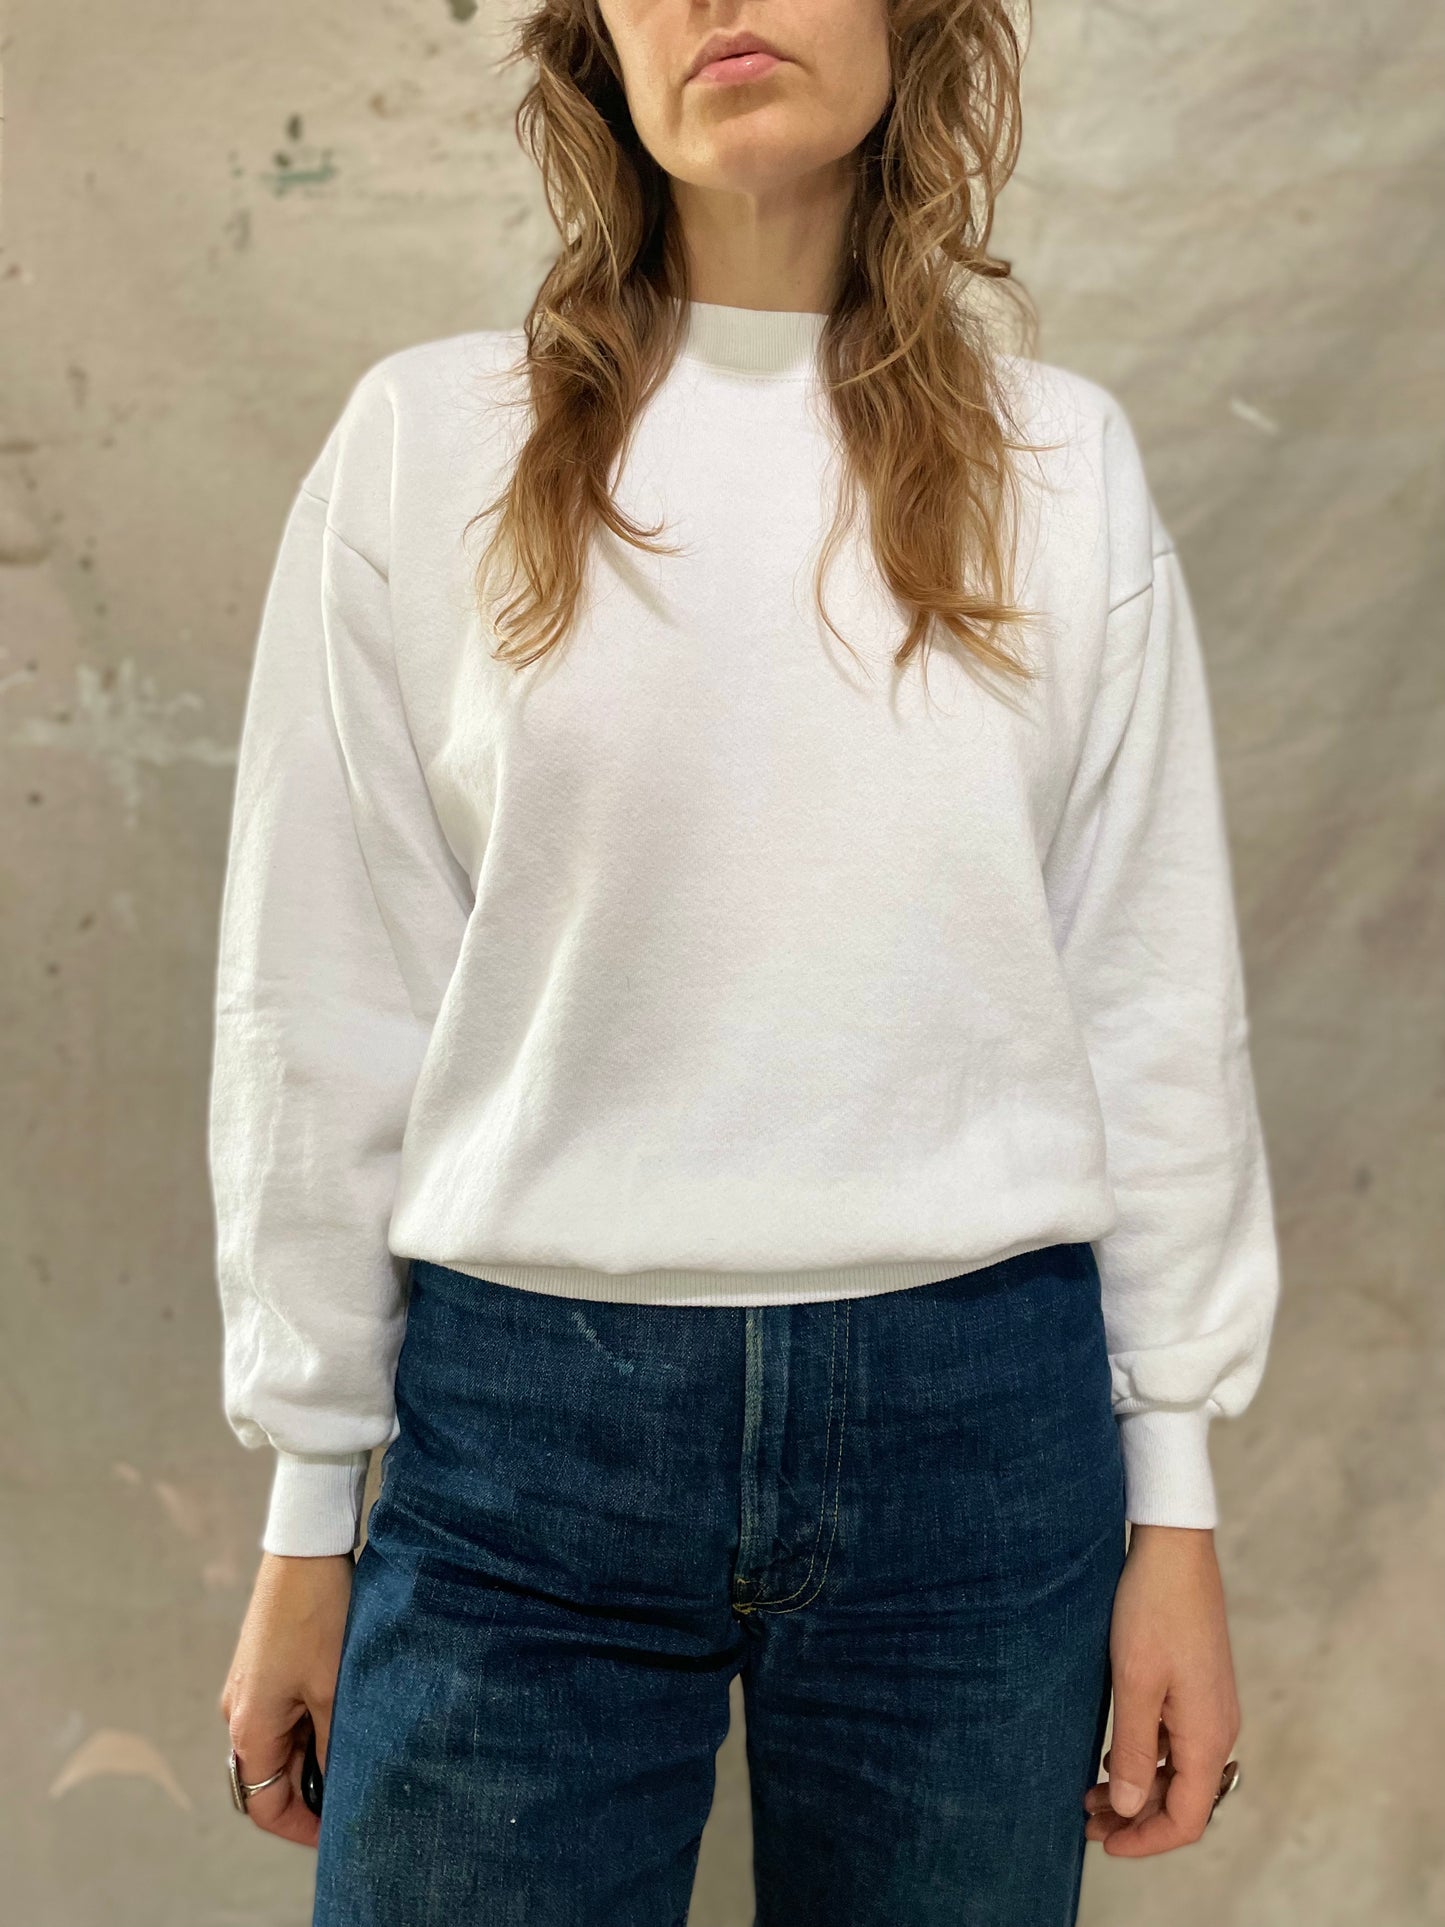 80s/90s Blank White Sweatshirt